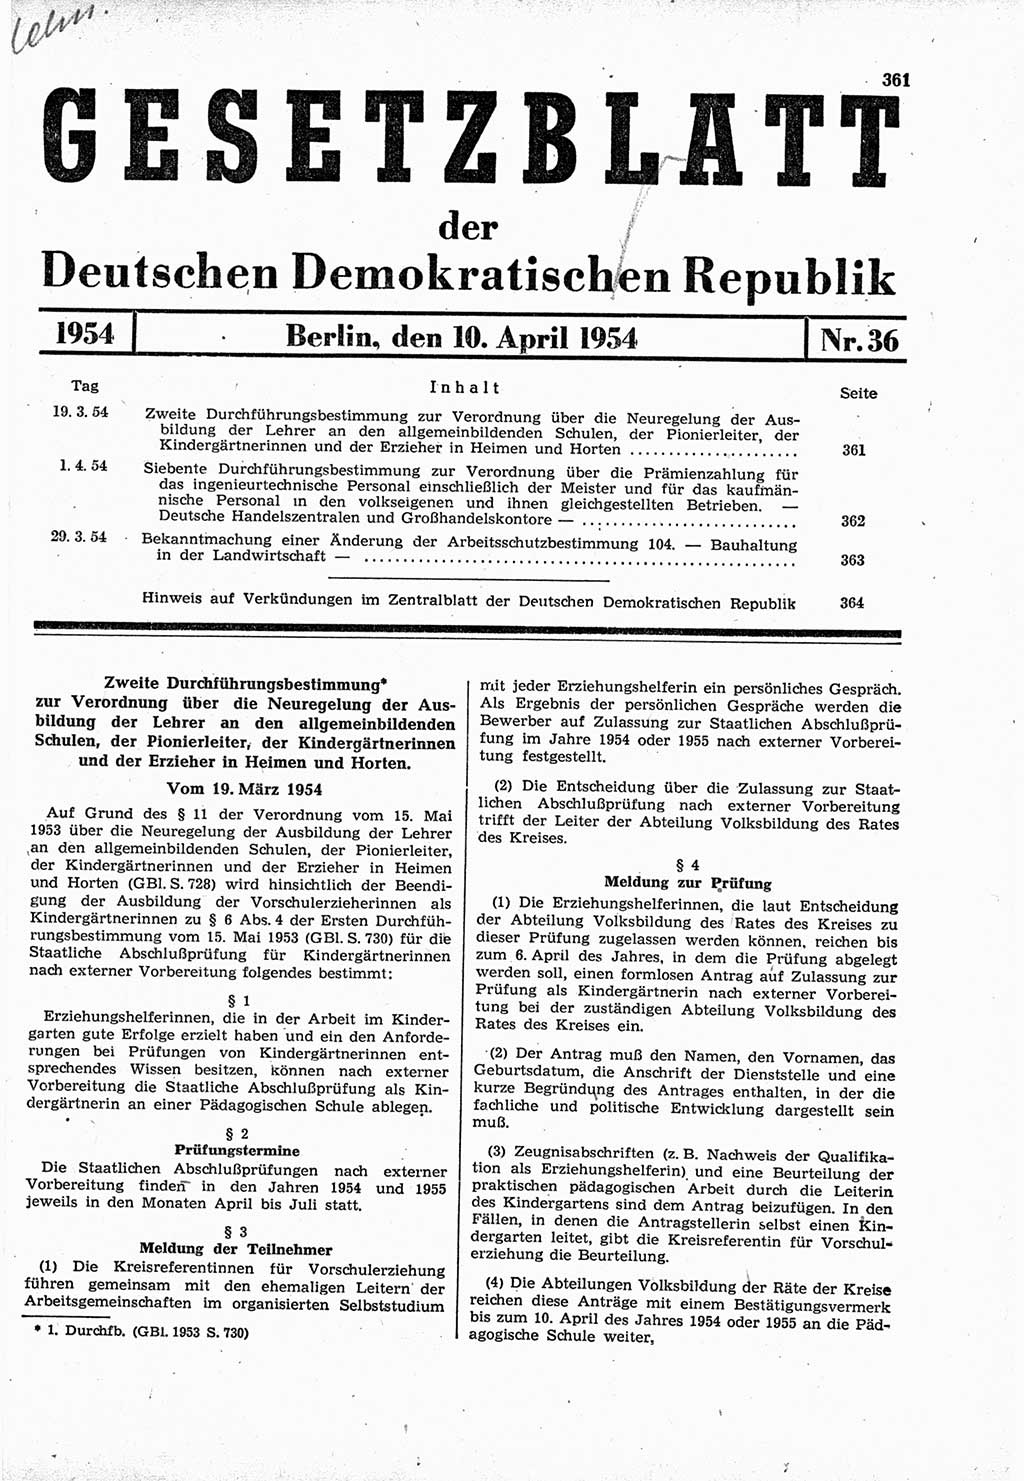 Gesetzblatt (GBl.) der Deutschen Demokratischen Republik (DDR) 1954, Seite 361 (GBl. DDR 1954, S. 361)